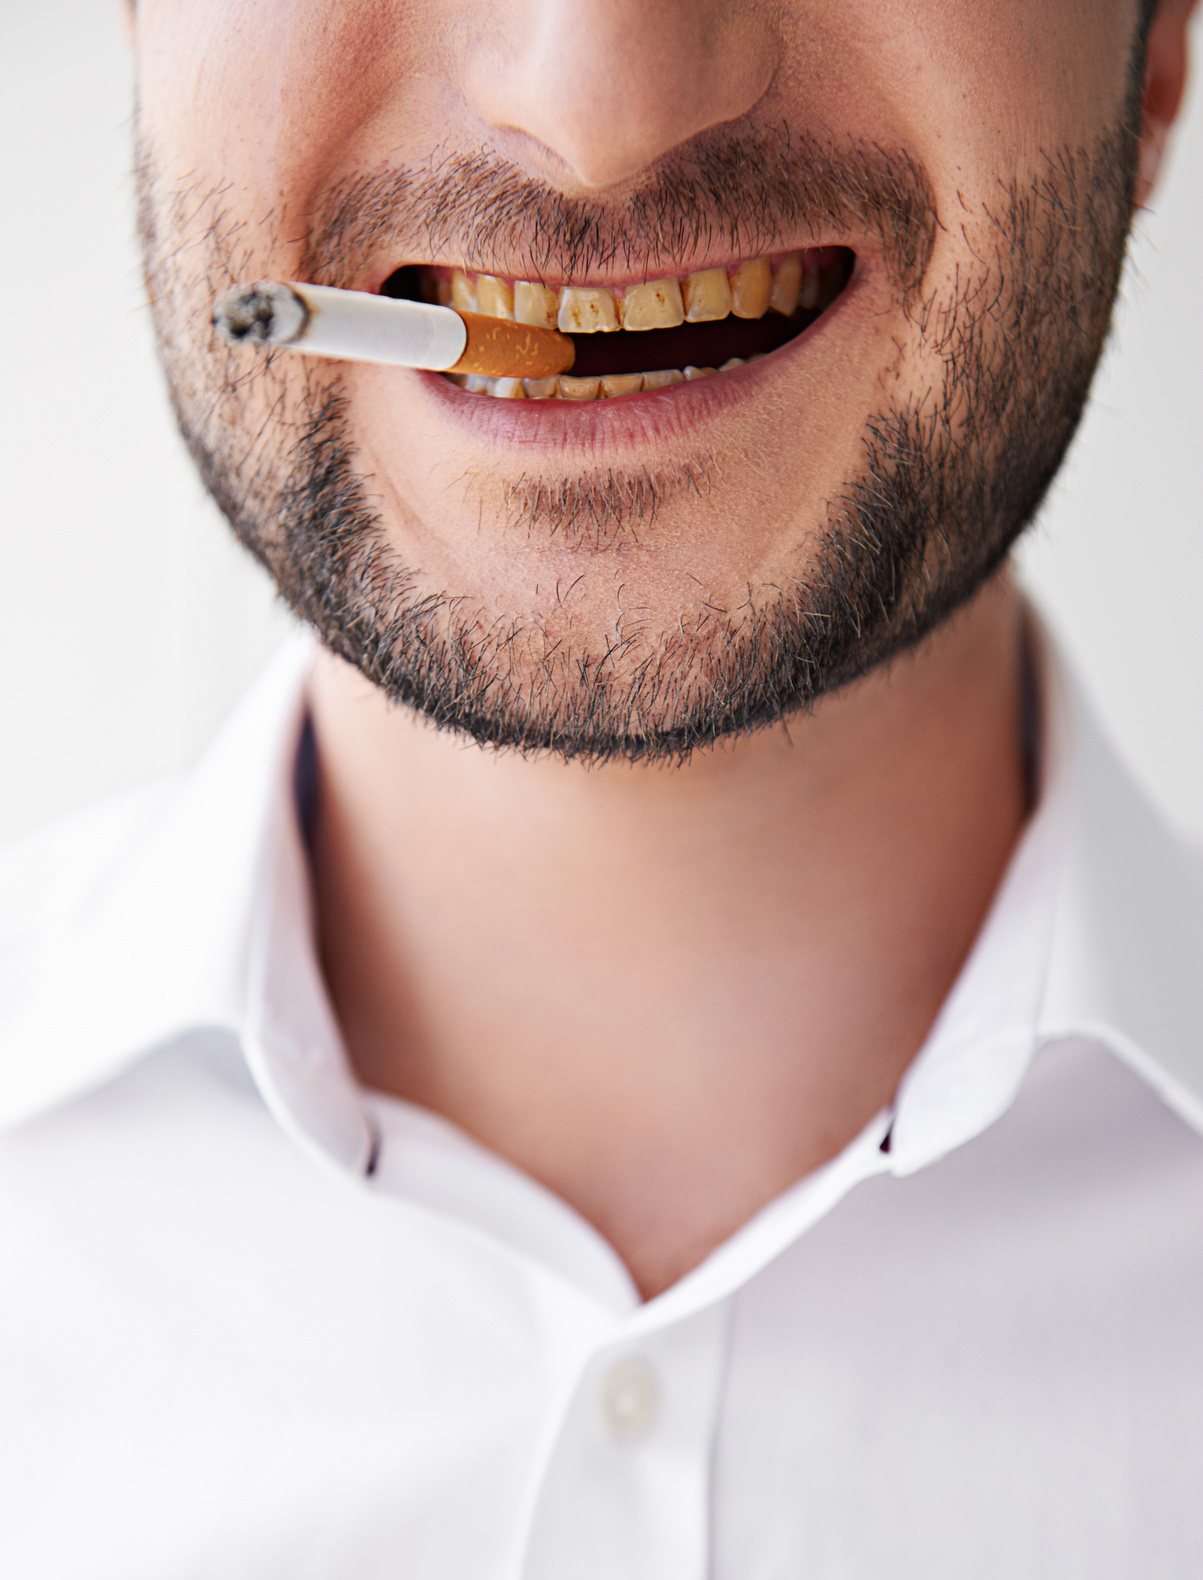 Smoking and dental care